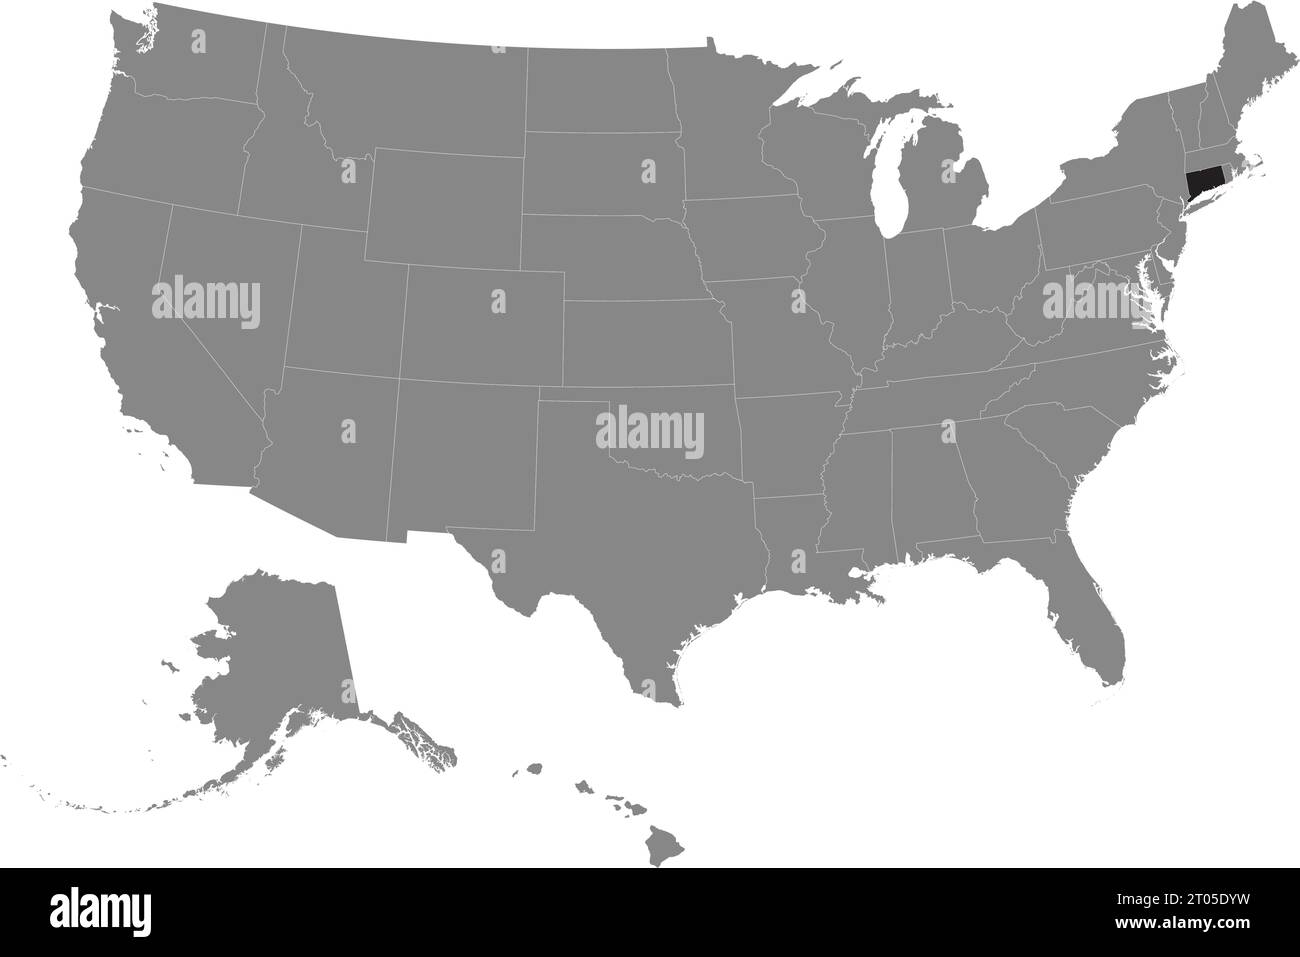 Schwarze CMYK-Bundeskarte von CONNECTICUT in detaillierter grauer, leerer politischer Karte der Vereinigten Staaten von Amerika auf transparentem Hintergrund Stock Vektor